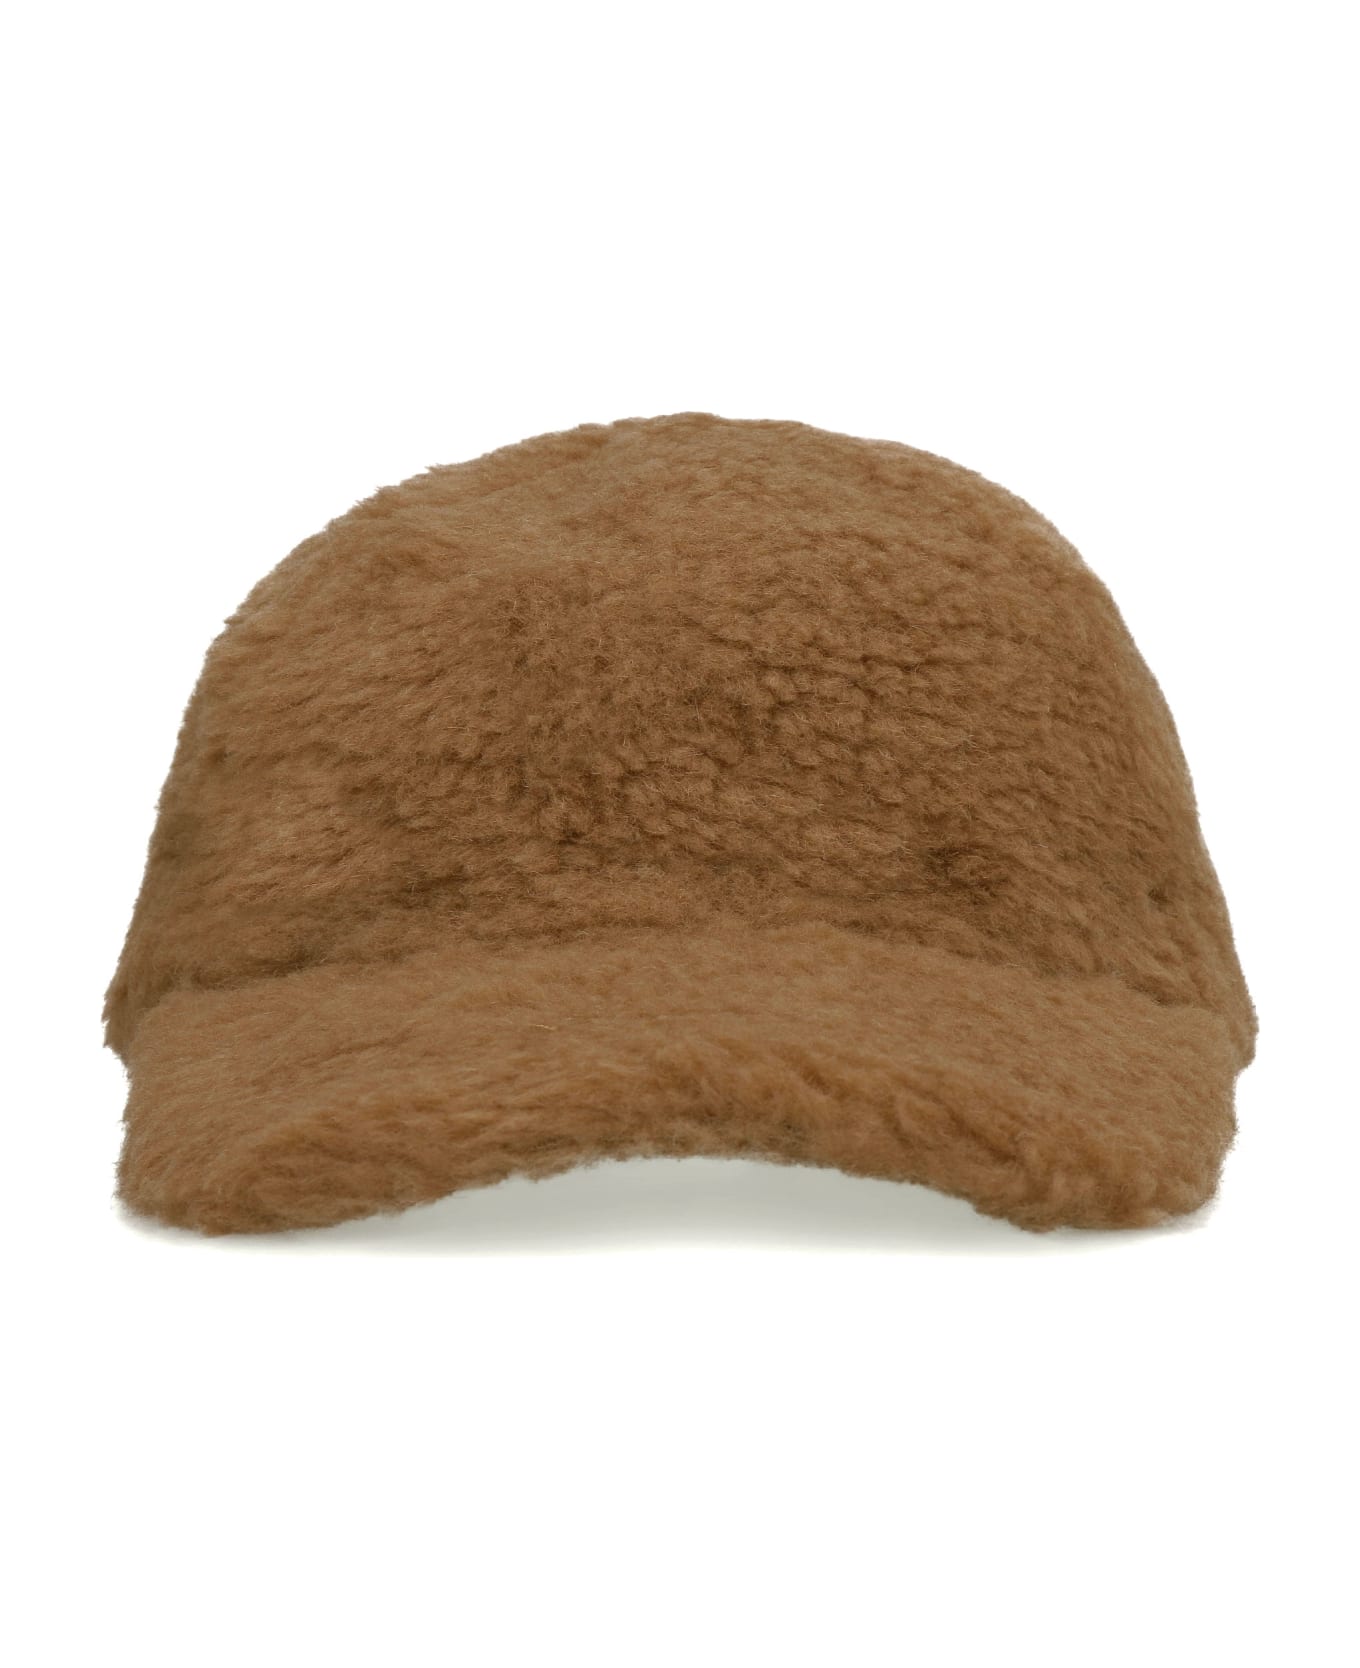 Max Mara Vegan Fur Hat - Camel